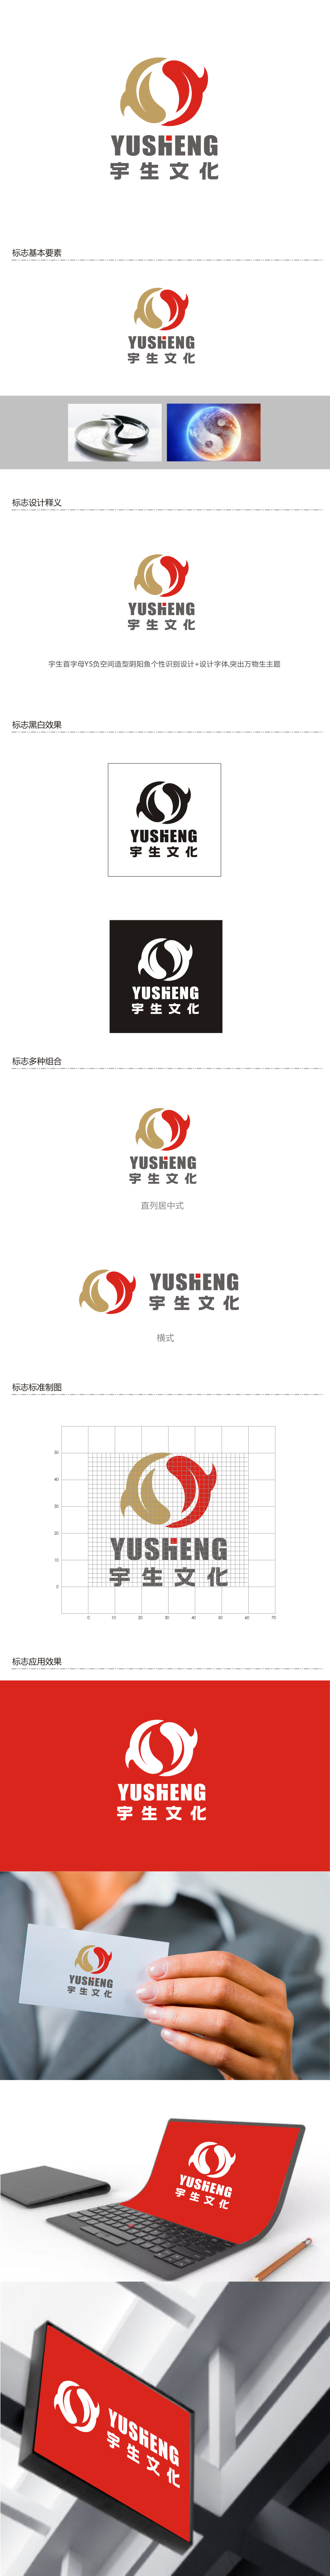 姜彦海的山东宇生文化股份有限公司logo设计